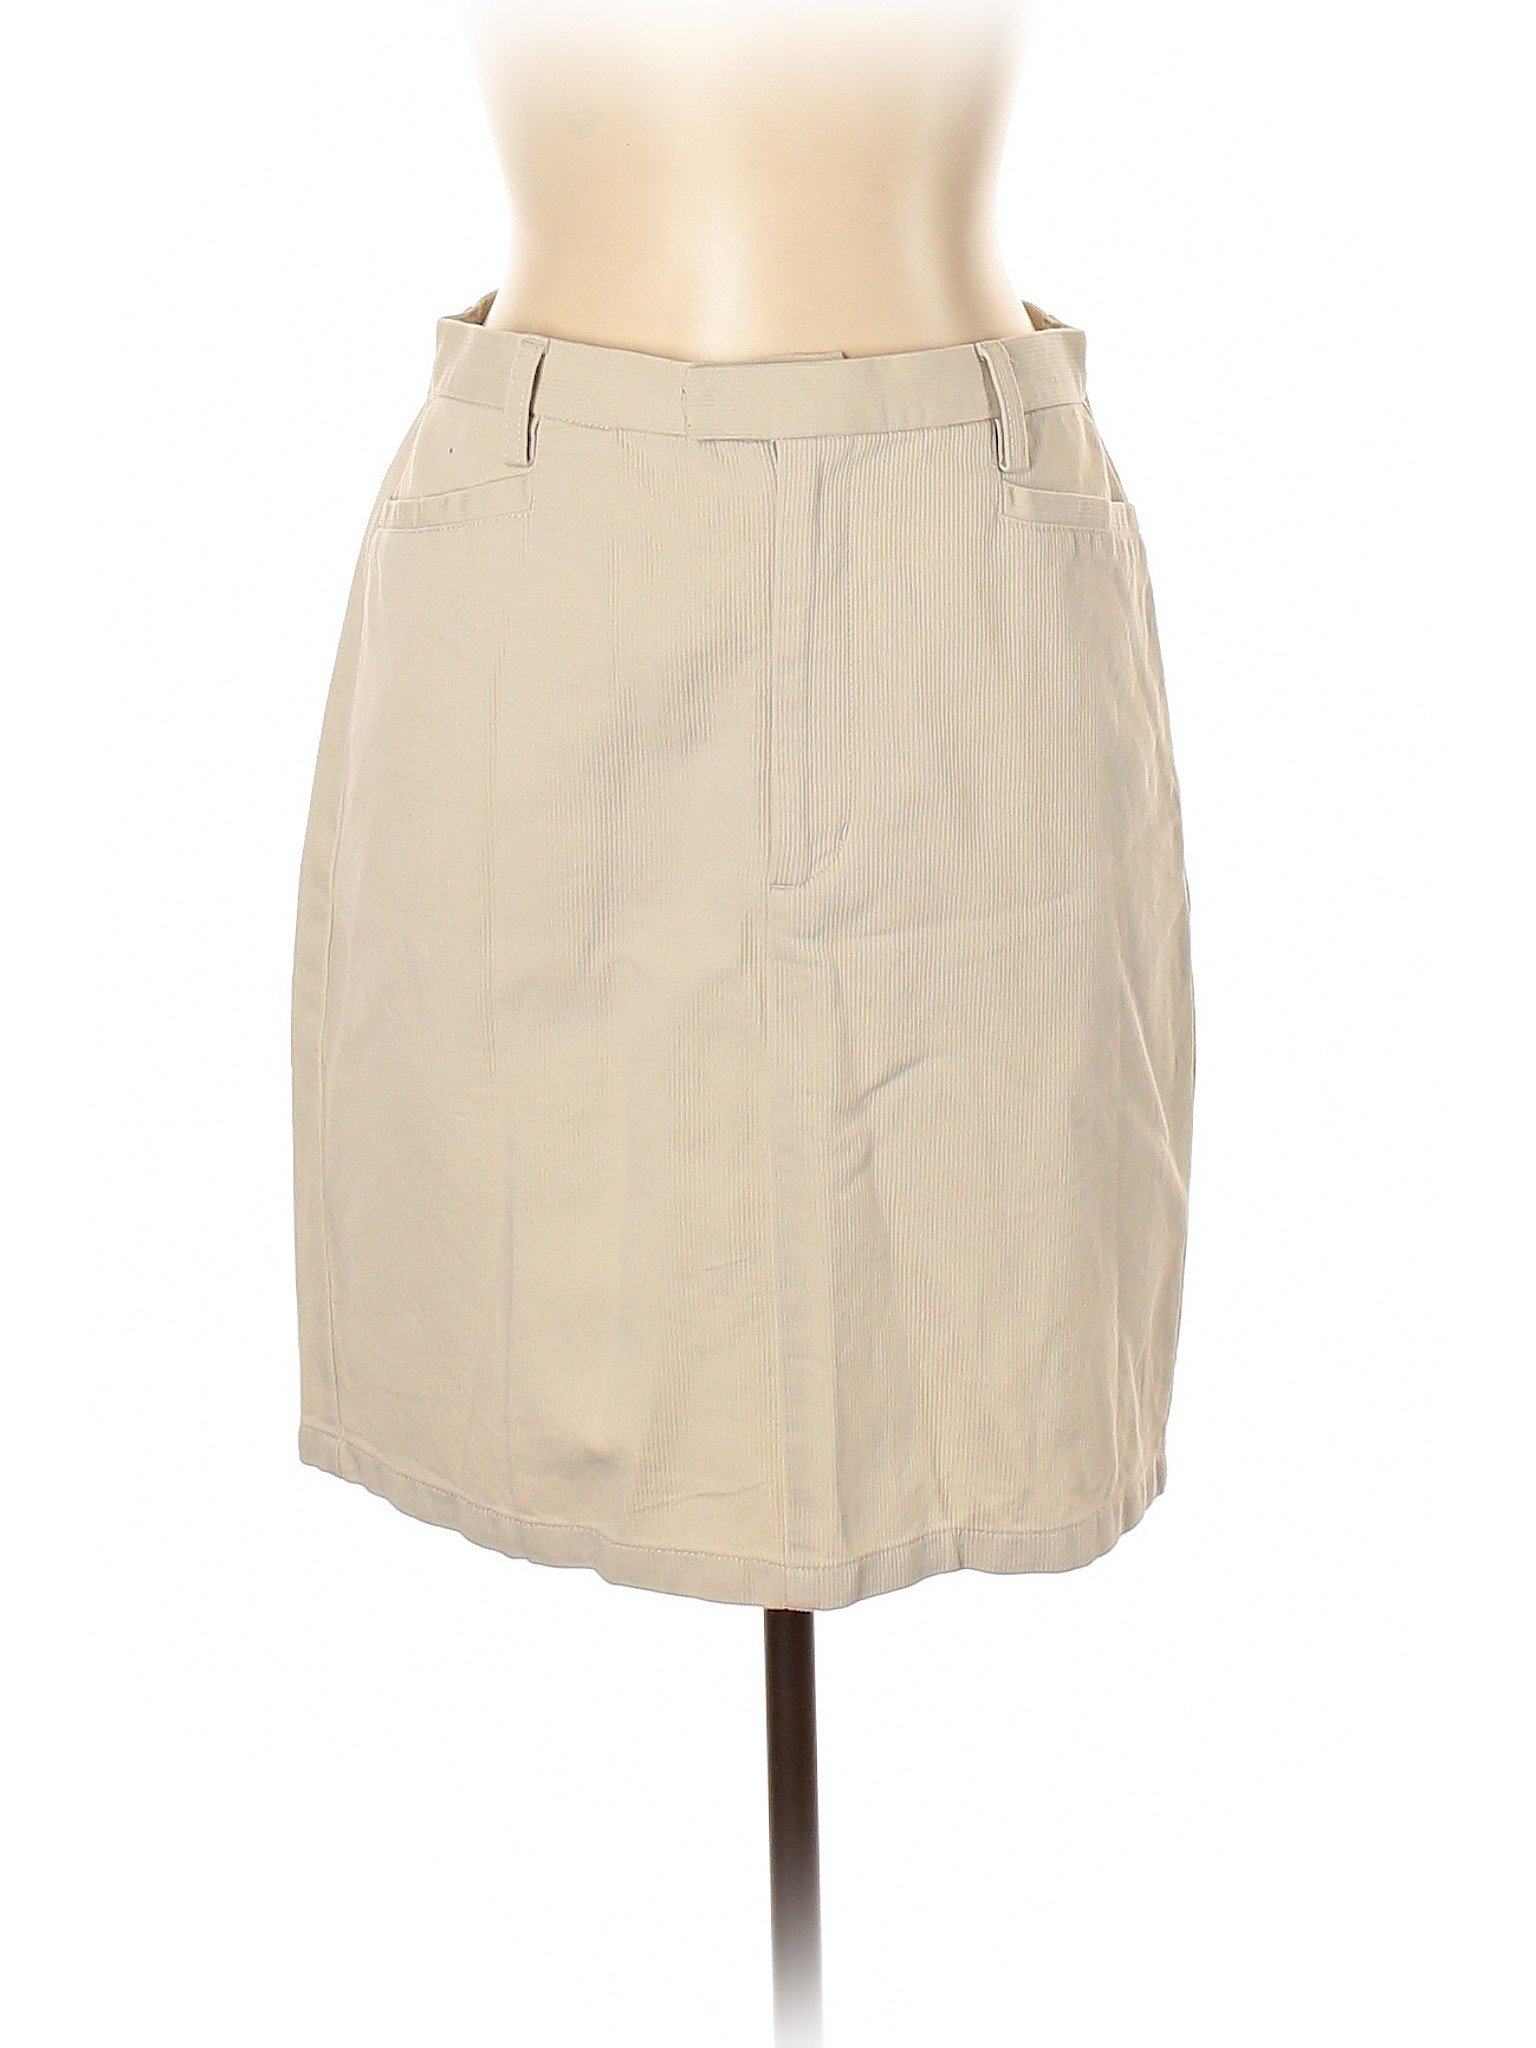 Eddie Bauer Women Brown Casual Skirt 12 | eBay